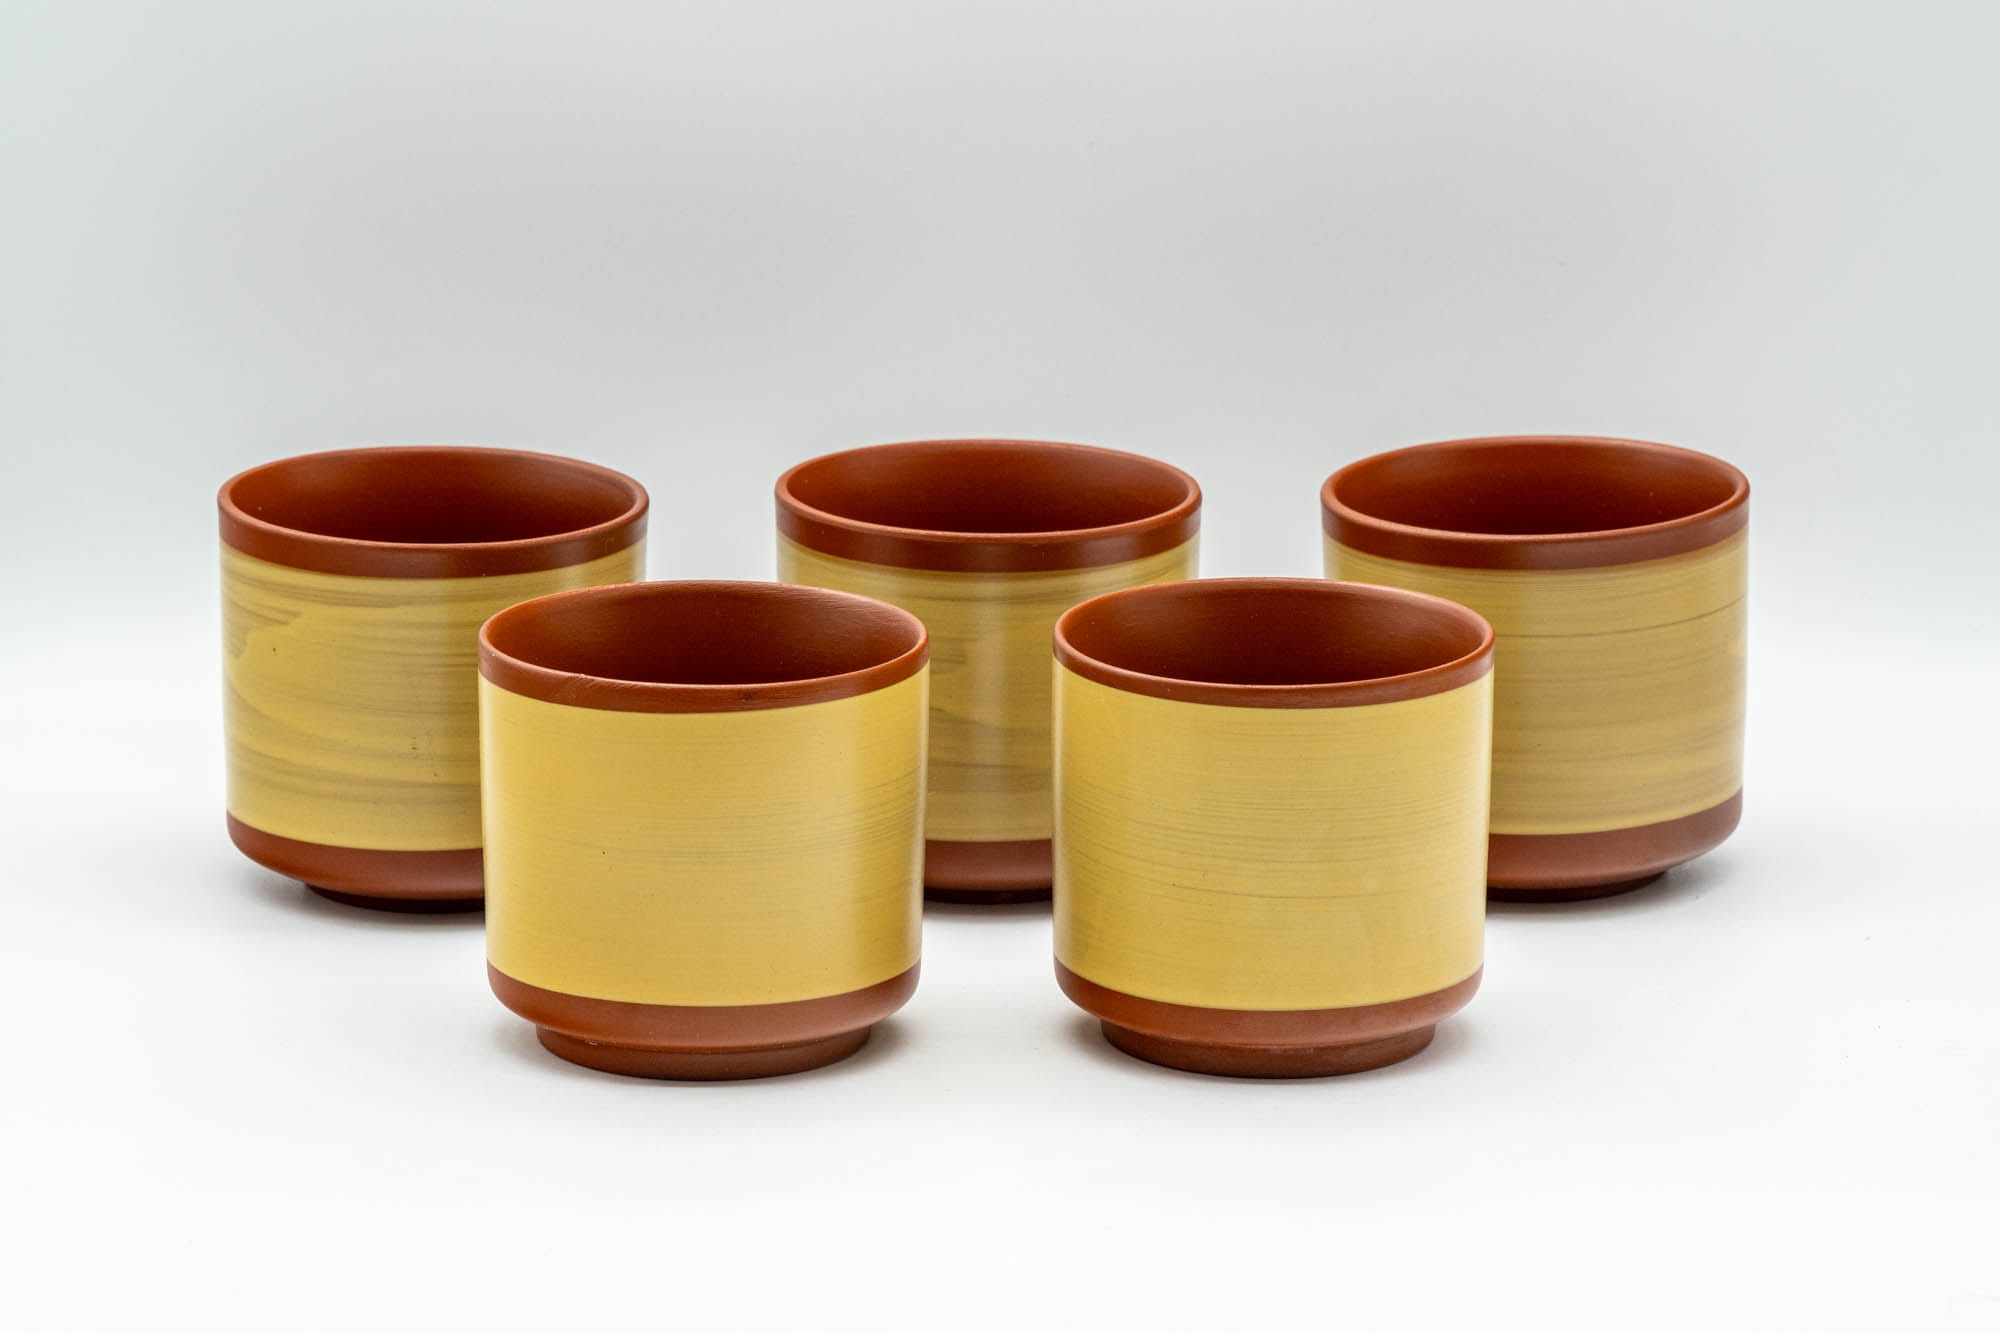 Japanese Tea Set - Mountainous Tokoname-yaki Debeso Kyusu Teapot with 5 Yunomi Teacups